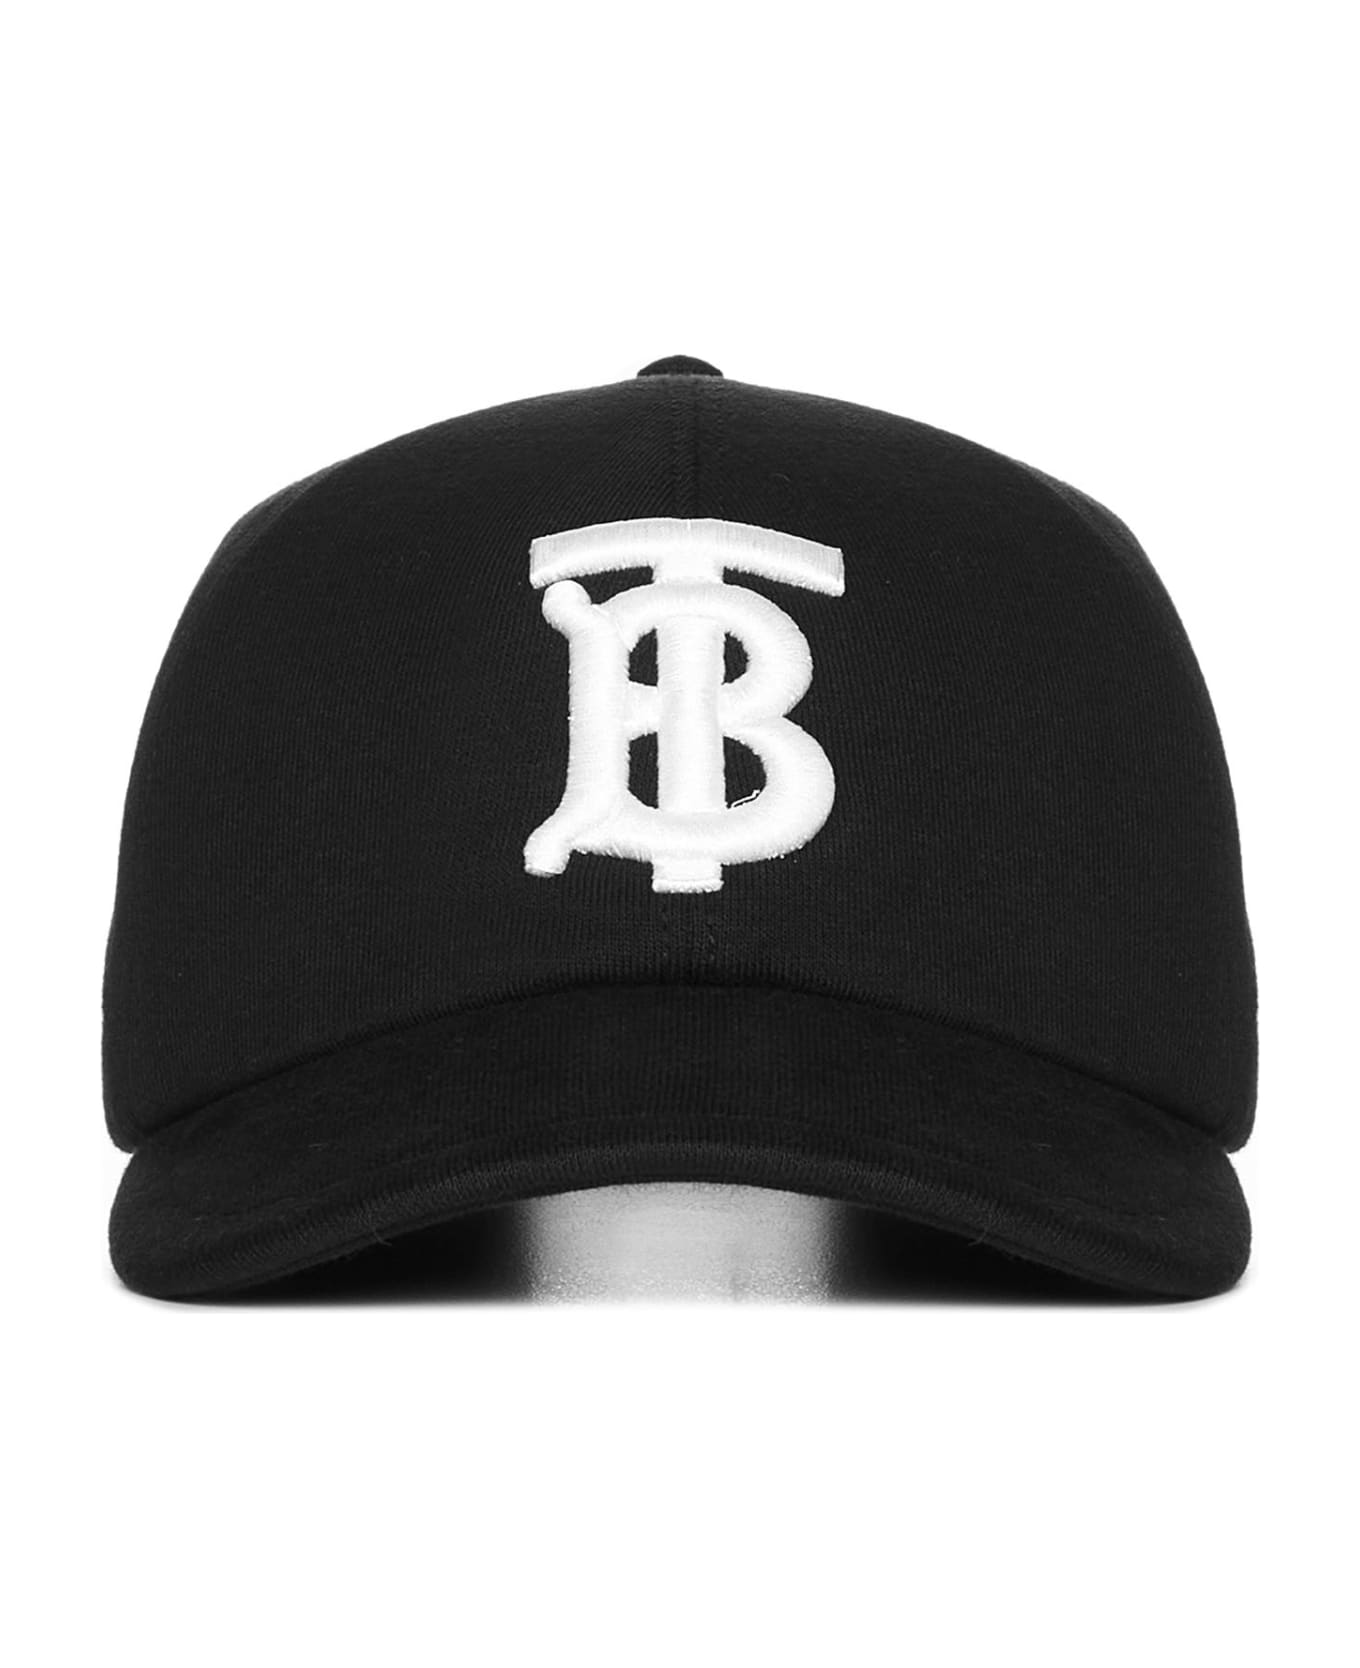 Burberry 'tb' Cap - Black 帽子